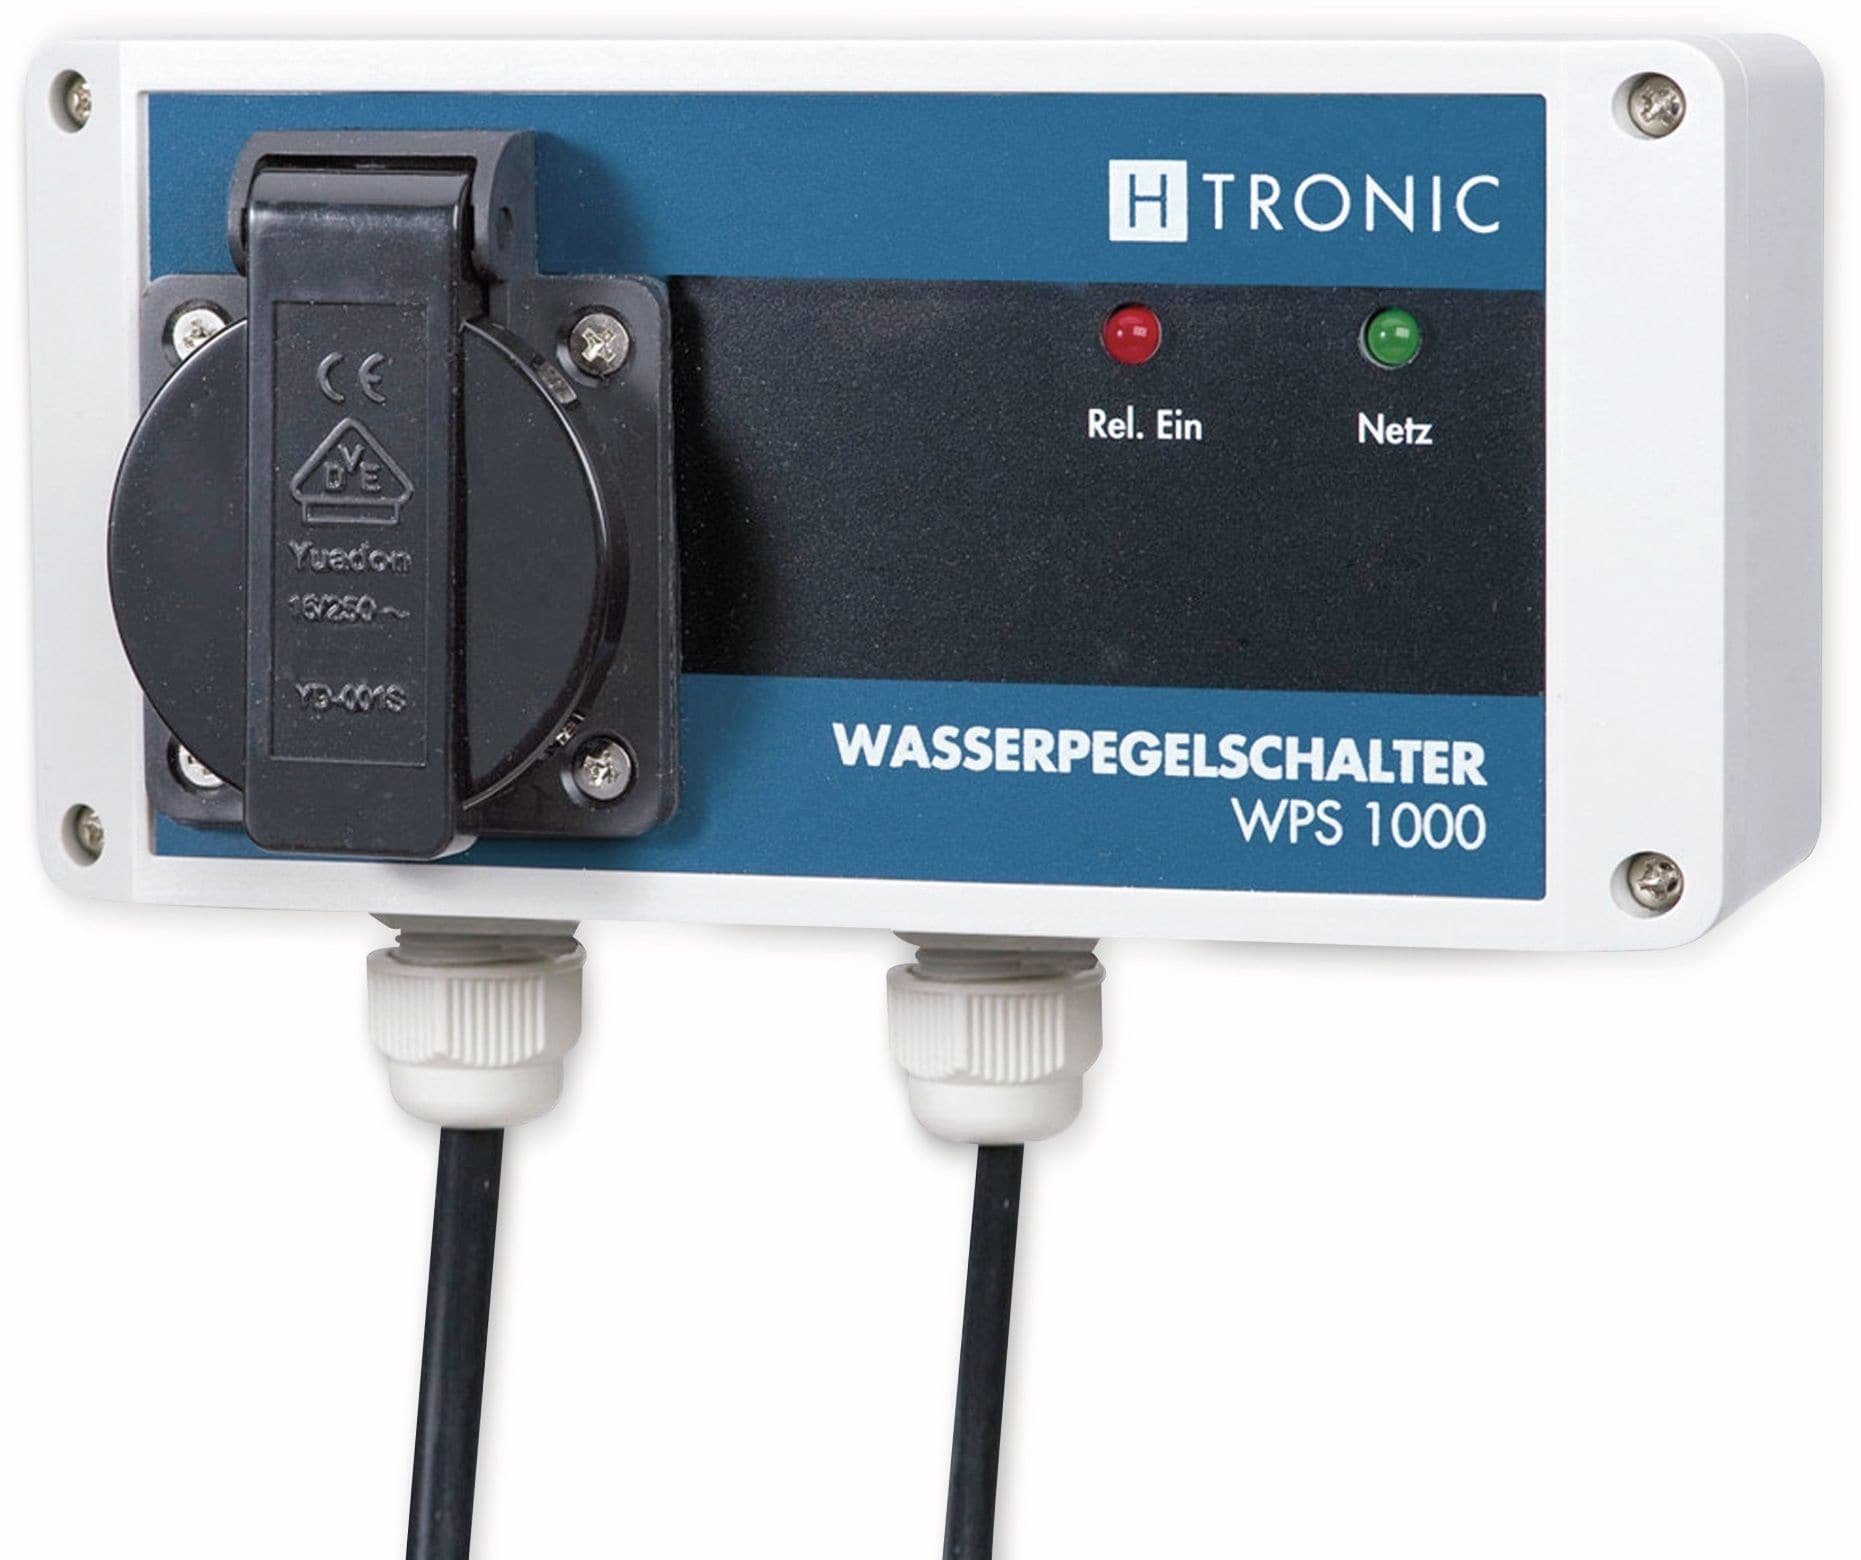 H-Tronic H-TRONIC Wasserpegelschalter WPS 1000, 230 V~ Alarmsirene